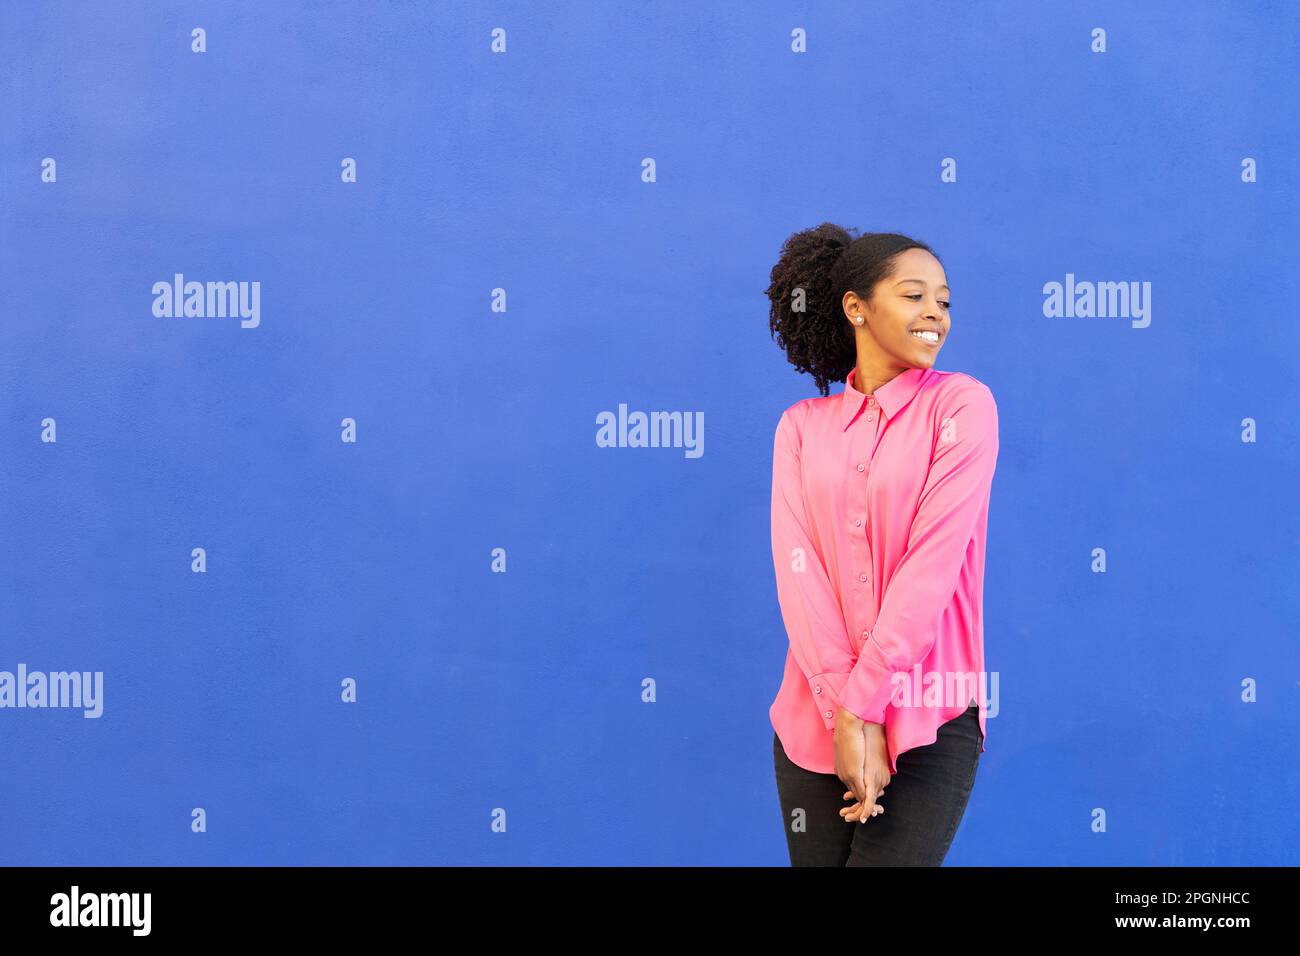 Donna felice che indossa una camicia rosa di fronte alla parete blu Foto Stock